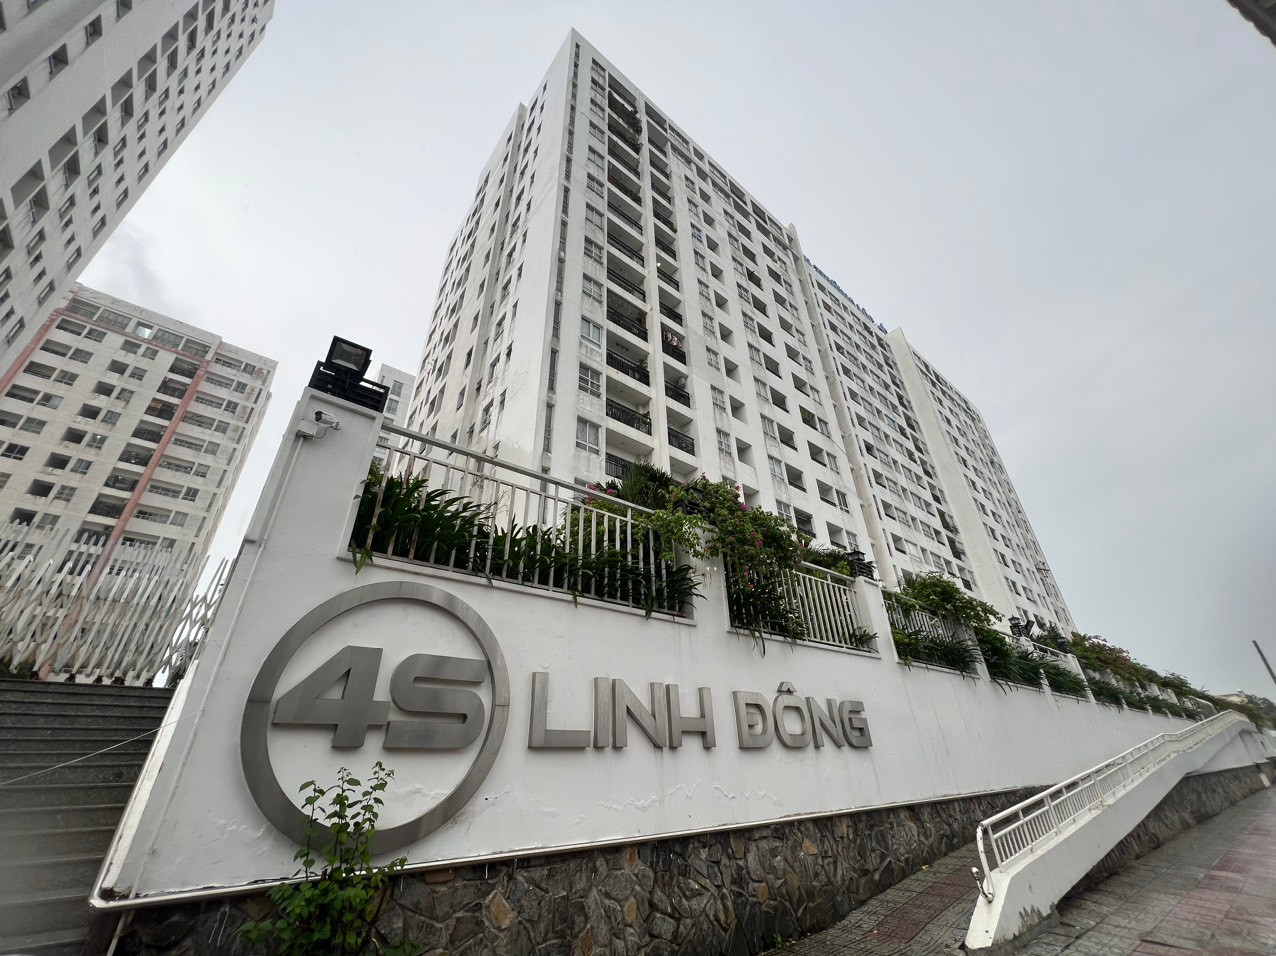 Chủ đầu tư chung cư 4S Linh Đông kiện các quyết định hành chính của UBND TP.HCM.